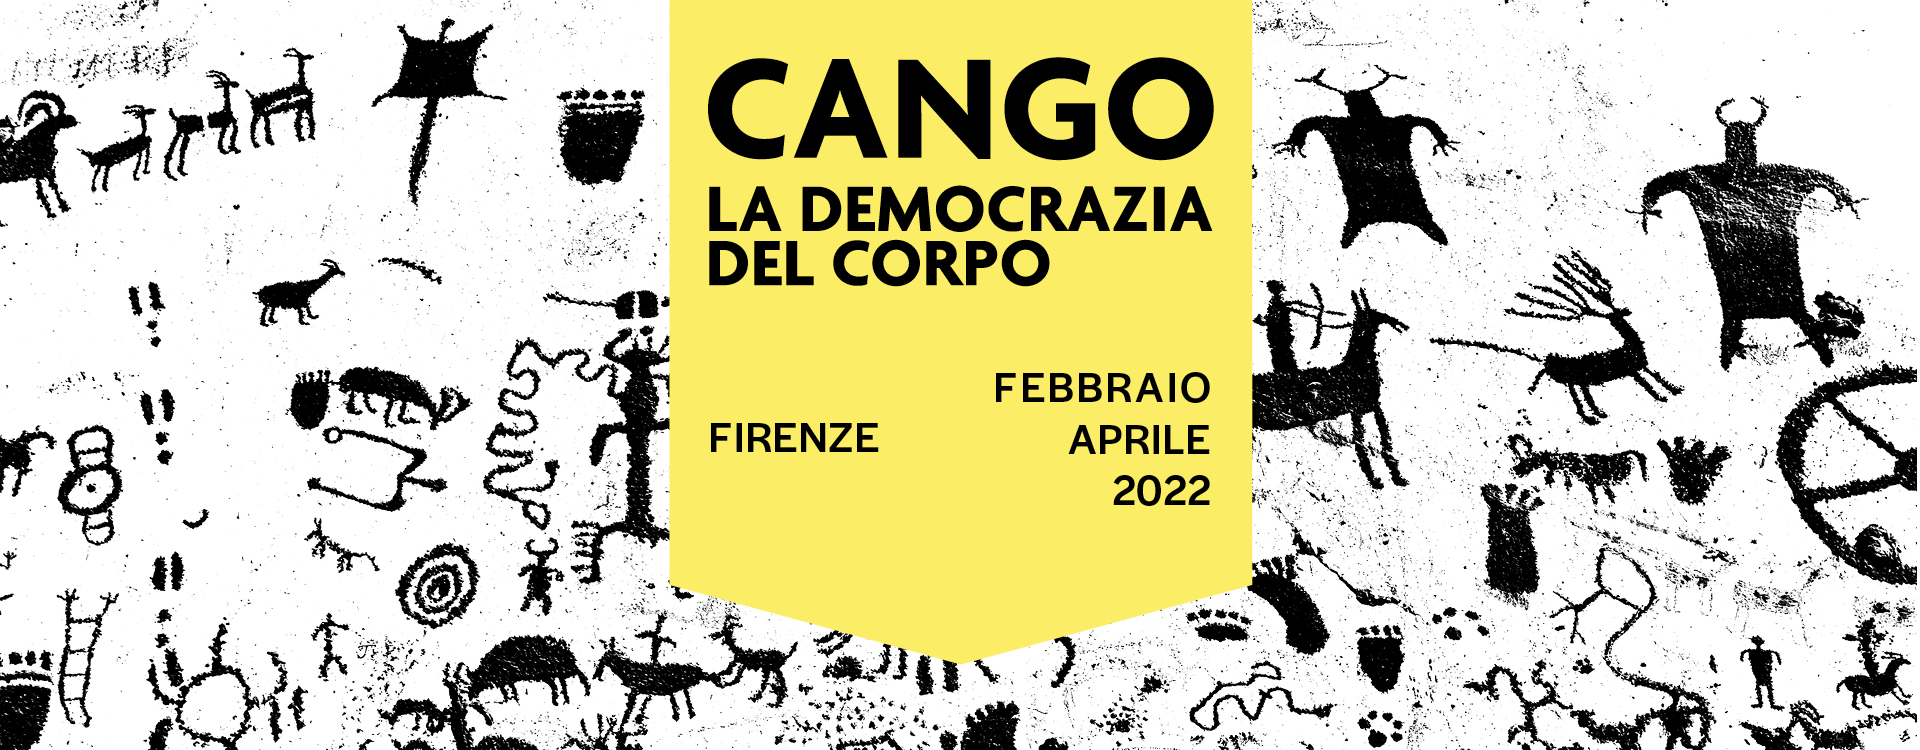 03-DEMOCRAZIA-2022-COVER-PAGINA-PROGRAMMA-SITO